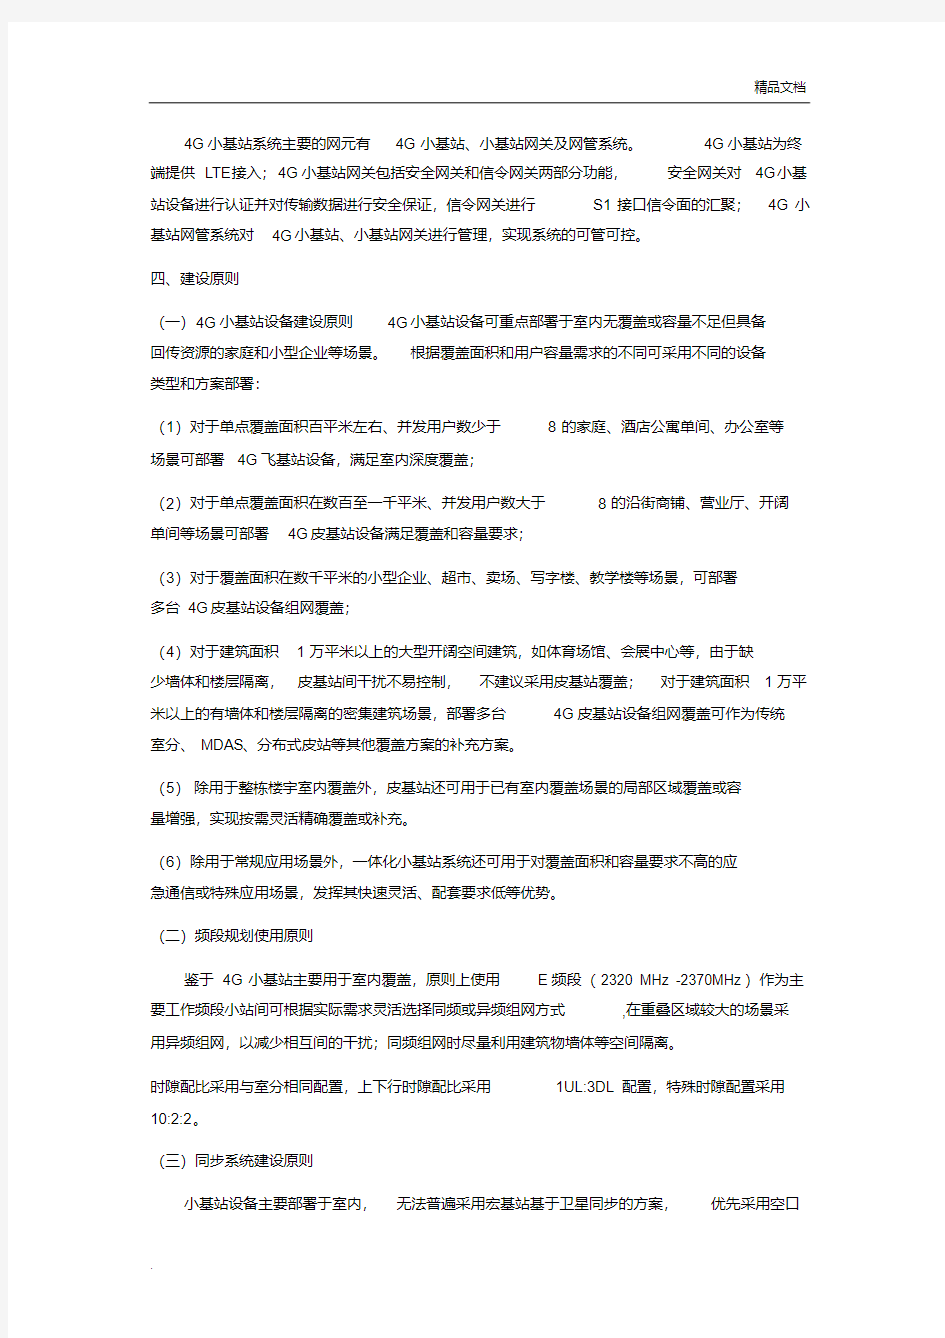 中国移动4G(皮站、飞站)小基站系统建设指导意见(最终定稿编)